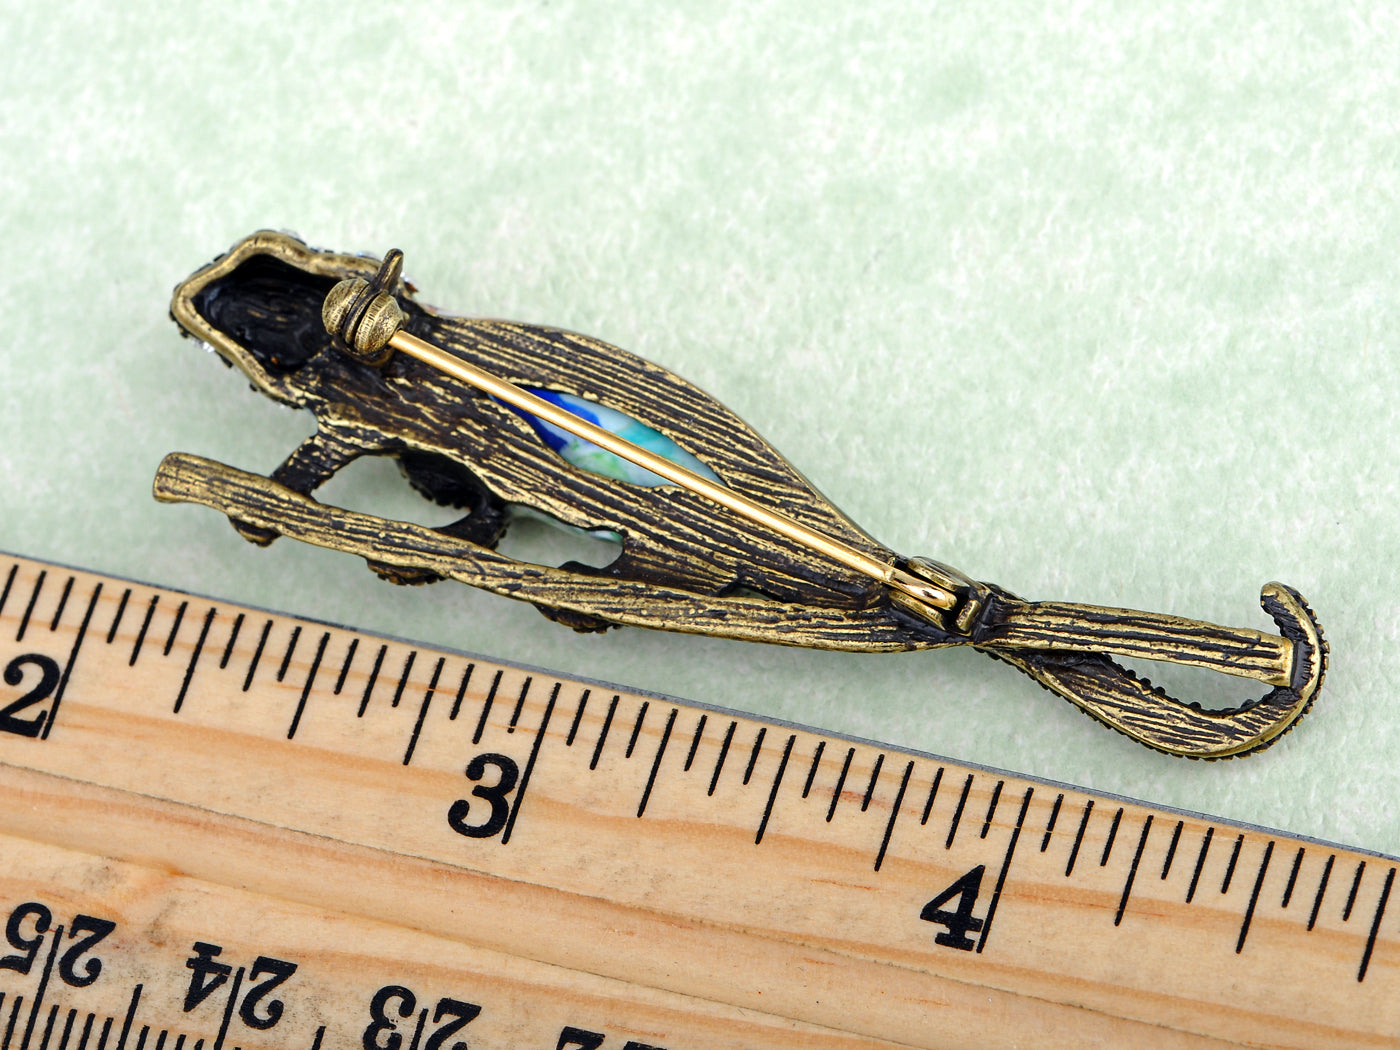 Epoxy Enamel Painted Lizard Animal Jewelry Pin Brooch